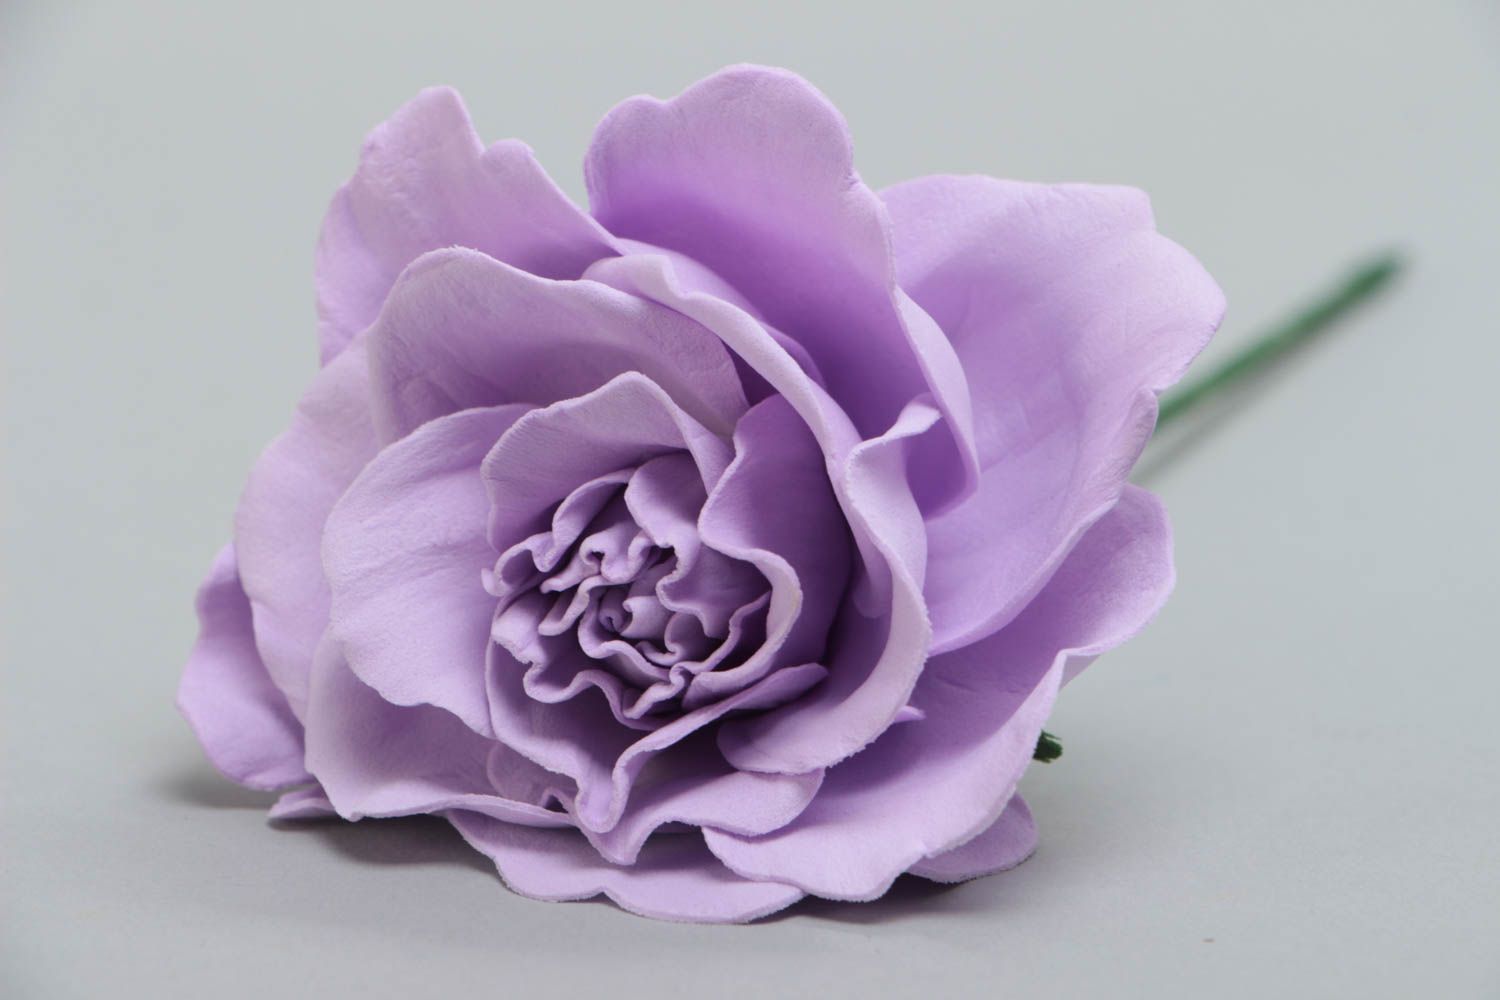 Сиреневая роза из фоамирана красивый цветок для декора дома ручной работы фото 4